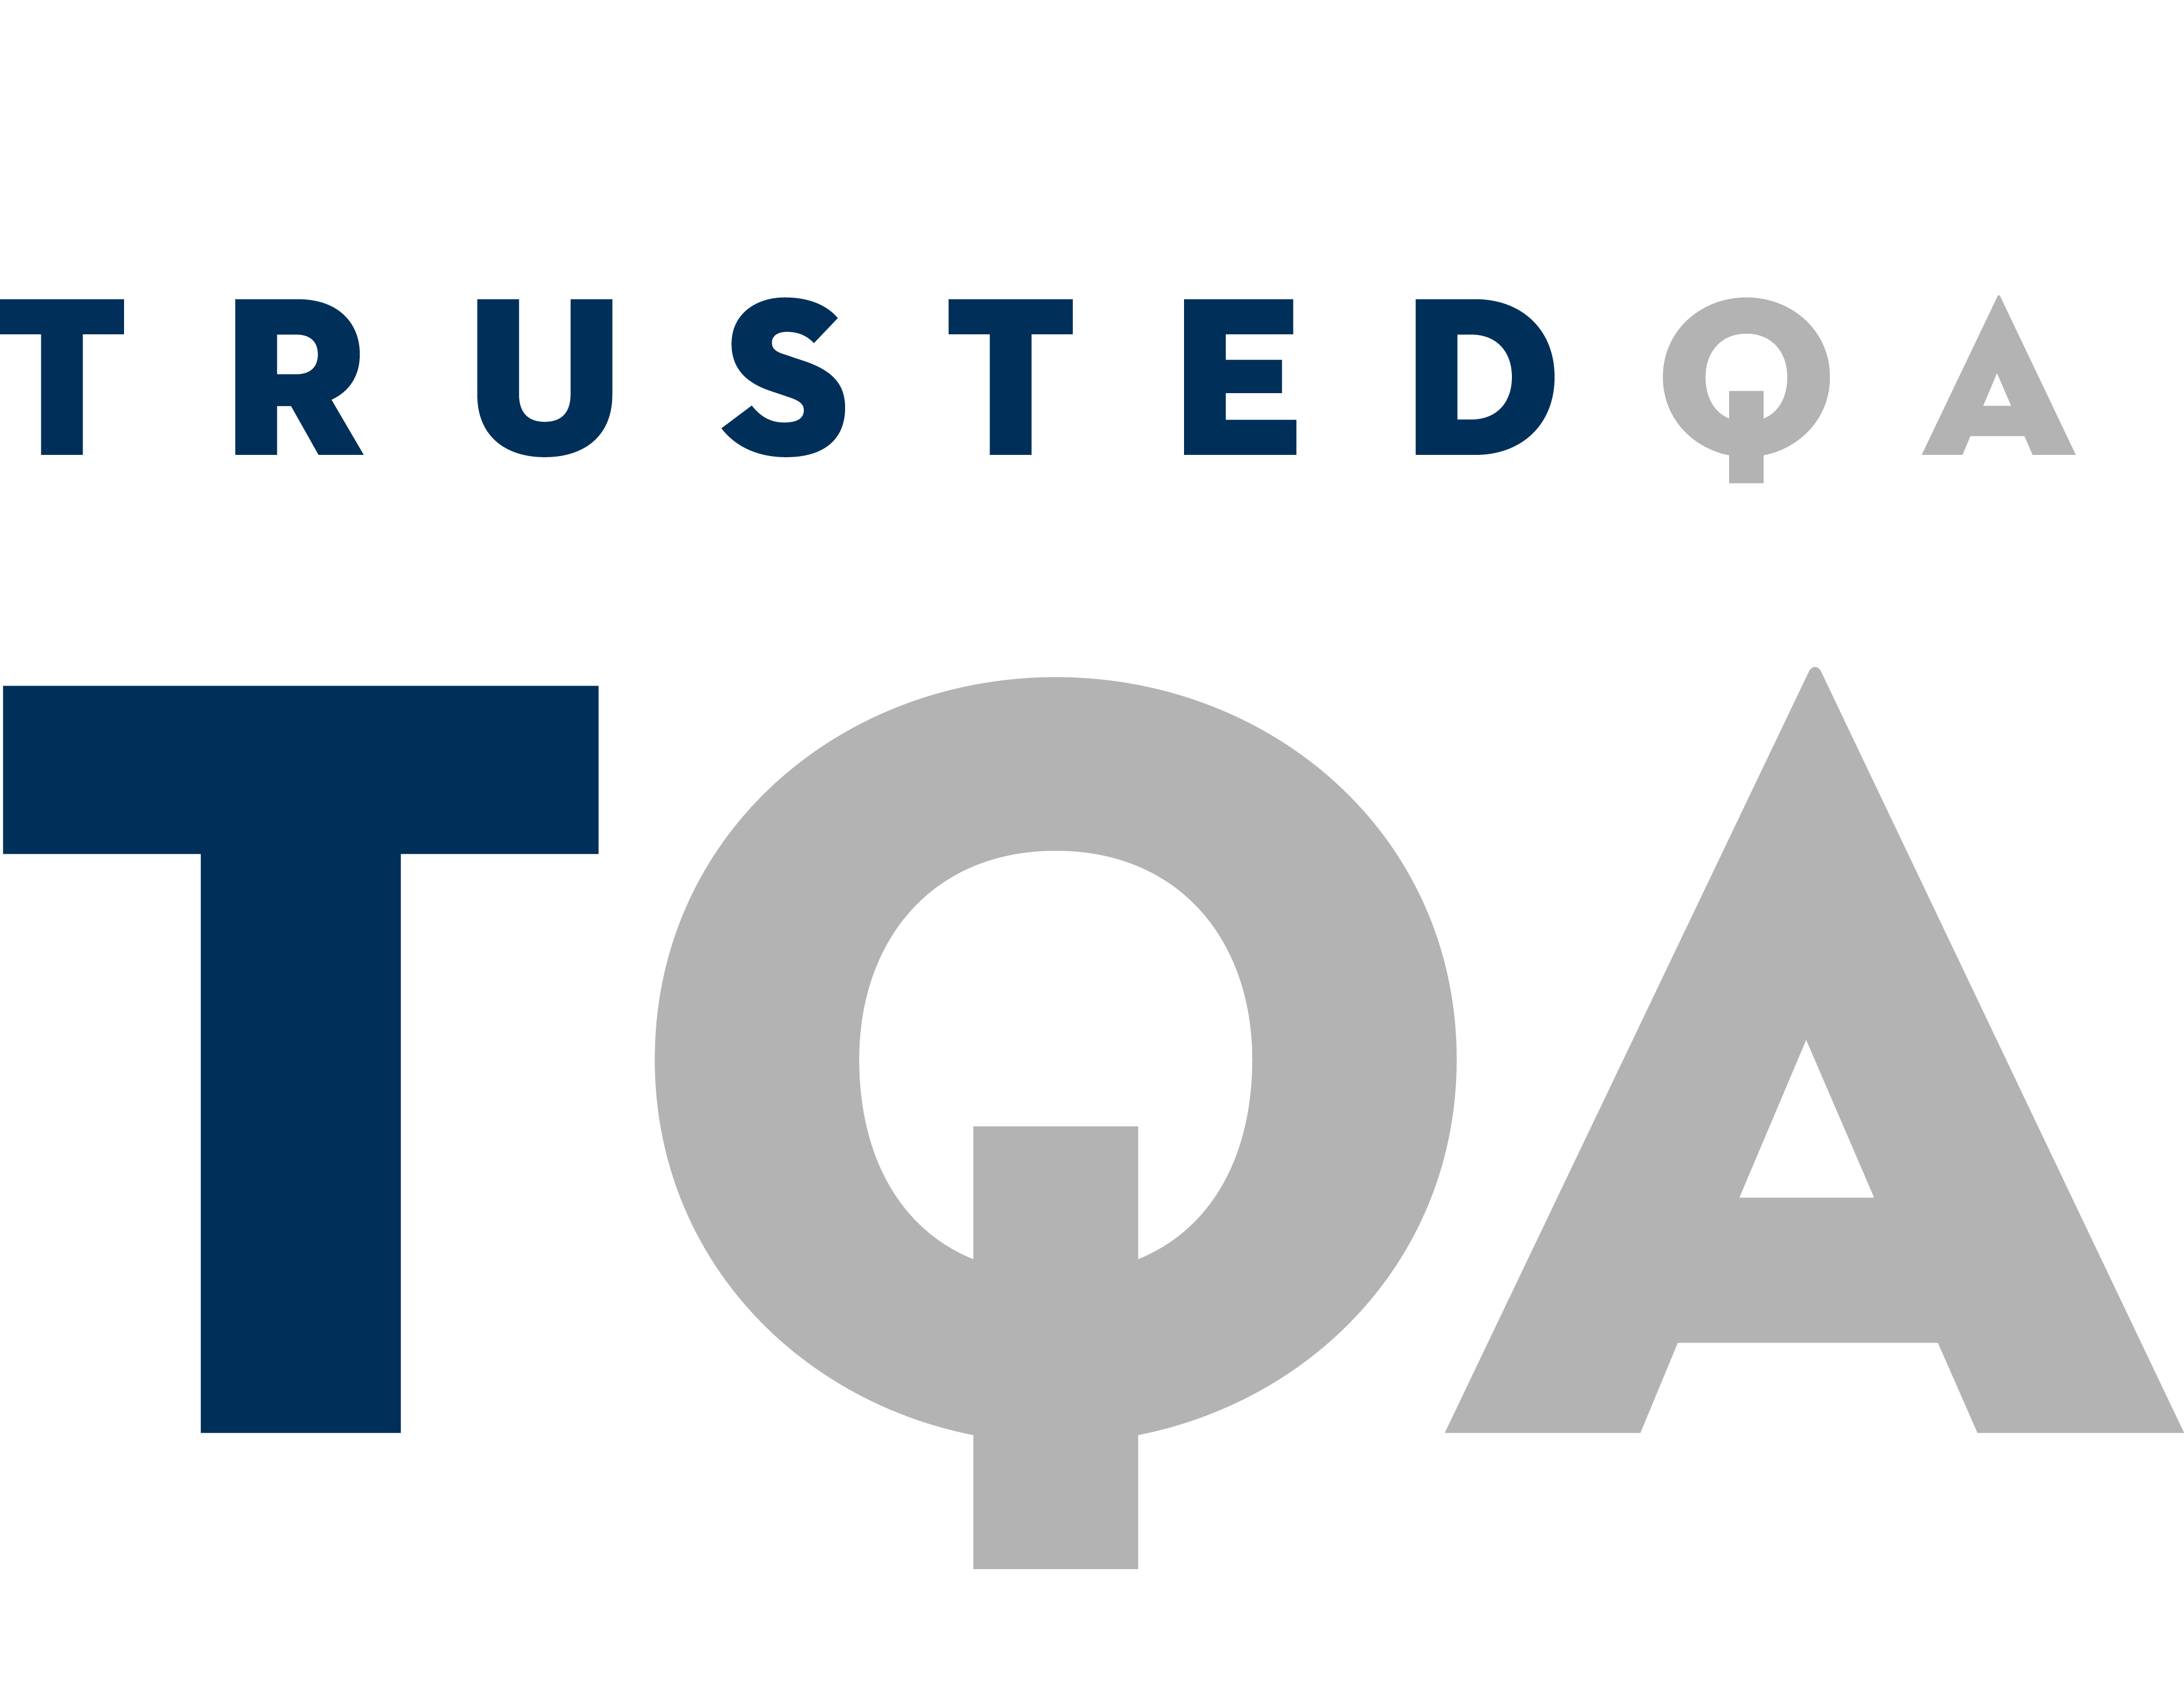 TrustedQA logo